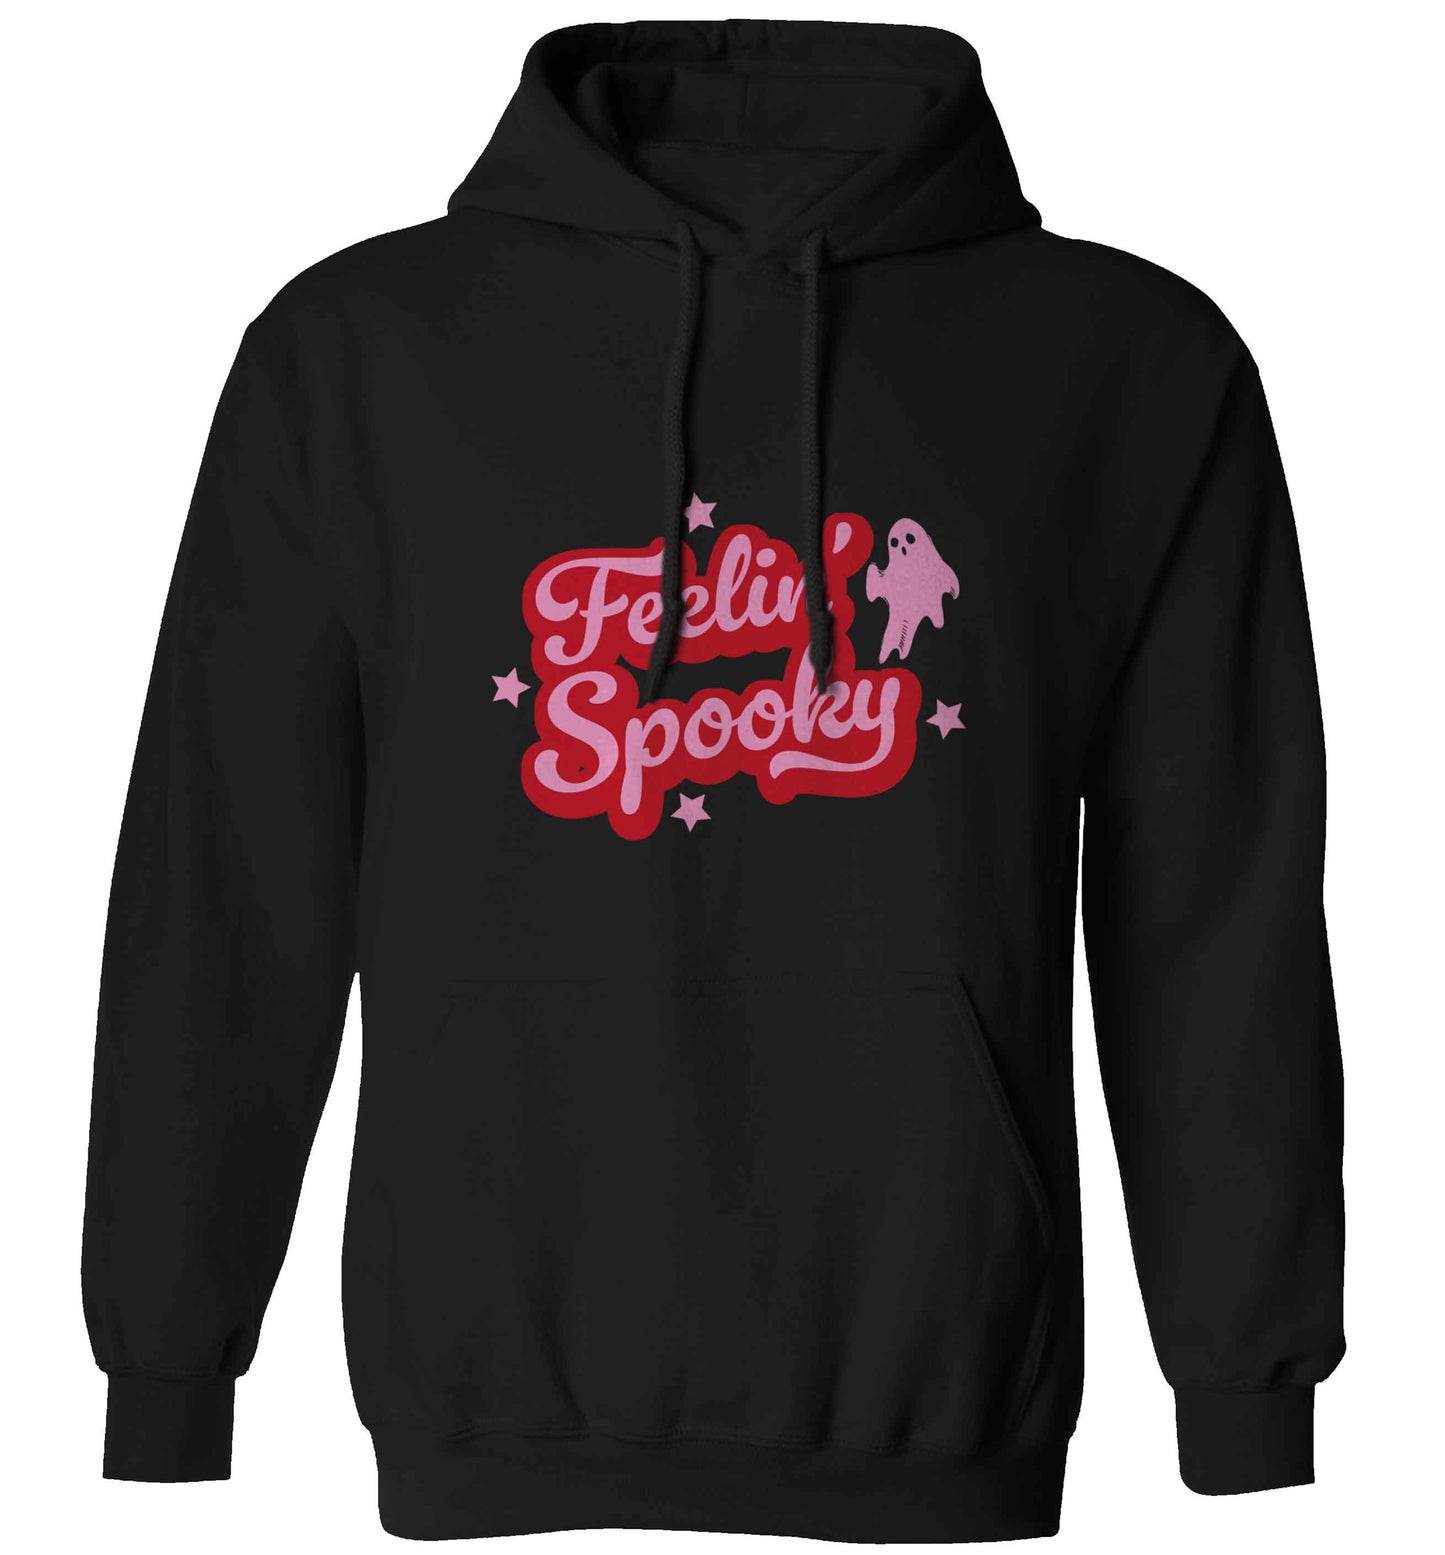 Feelin' Spooky Kit adults unisex black hoodie 2XL